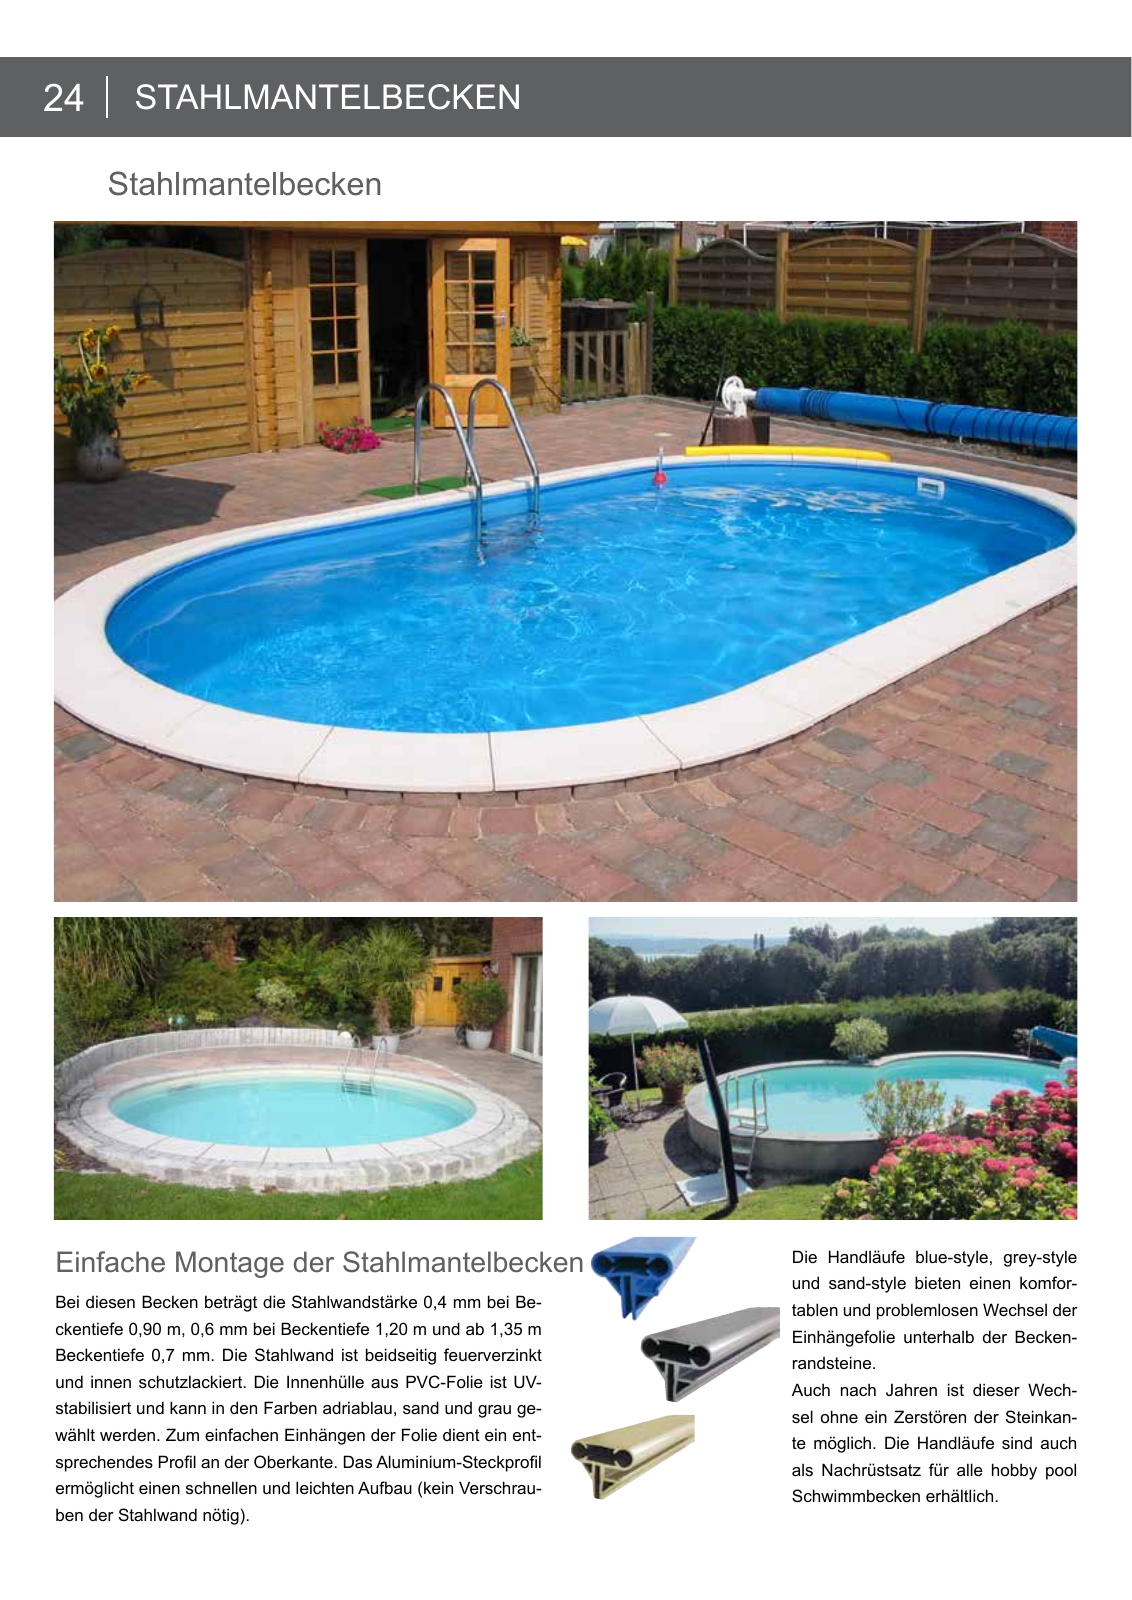 Vorschau Hobby pool Schwimmbadkatalog 2016 Seite 24